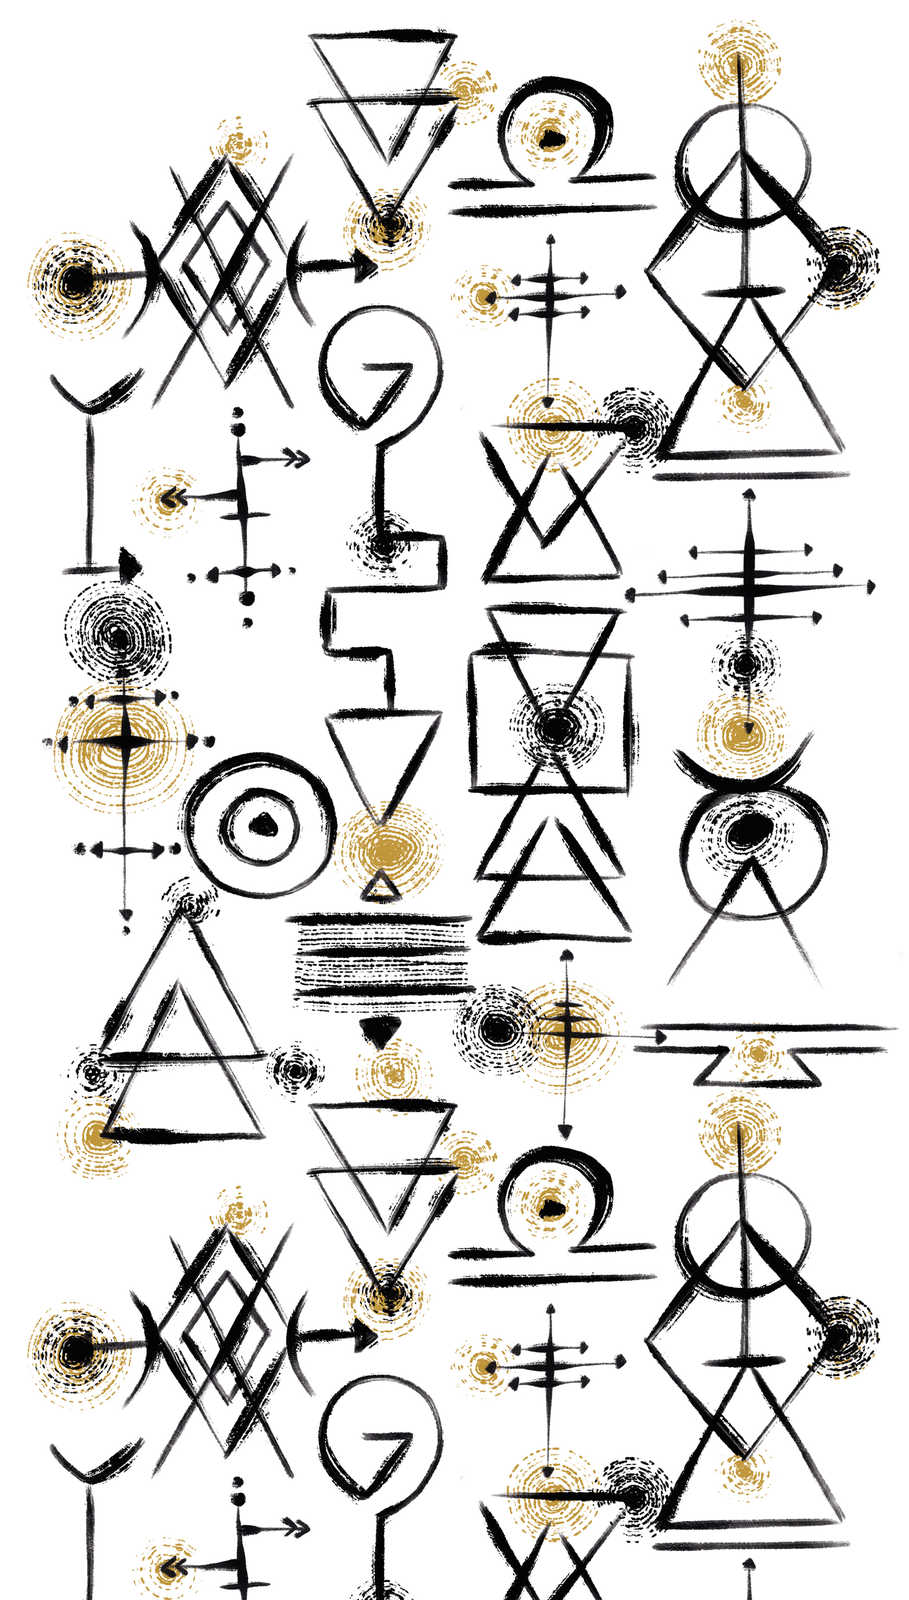             Onderlaag behang met abstracte symbolen op een lichte achtergrond - wit, zwart, goud
        